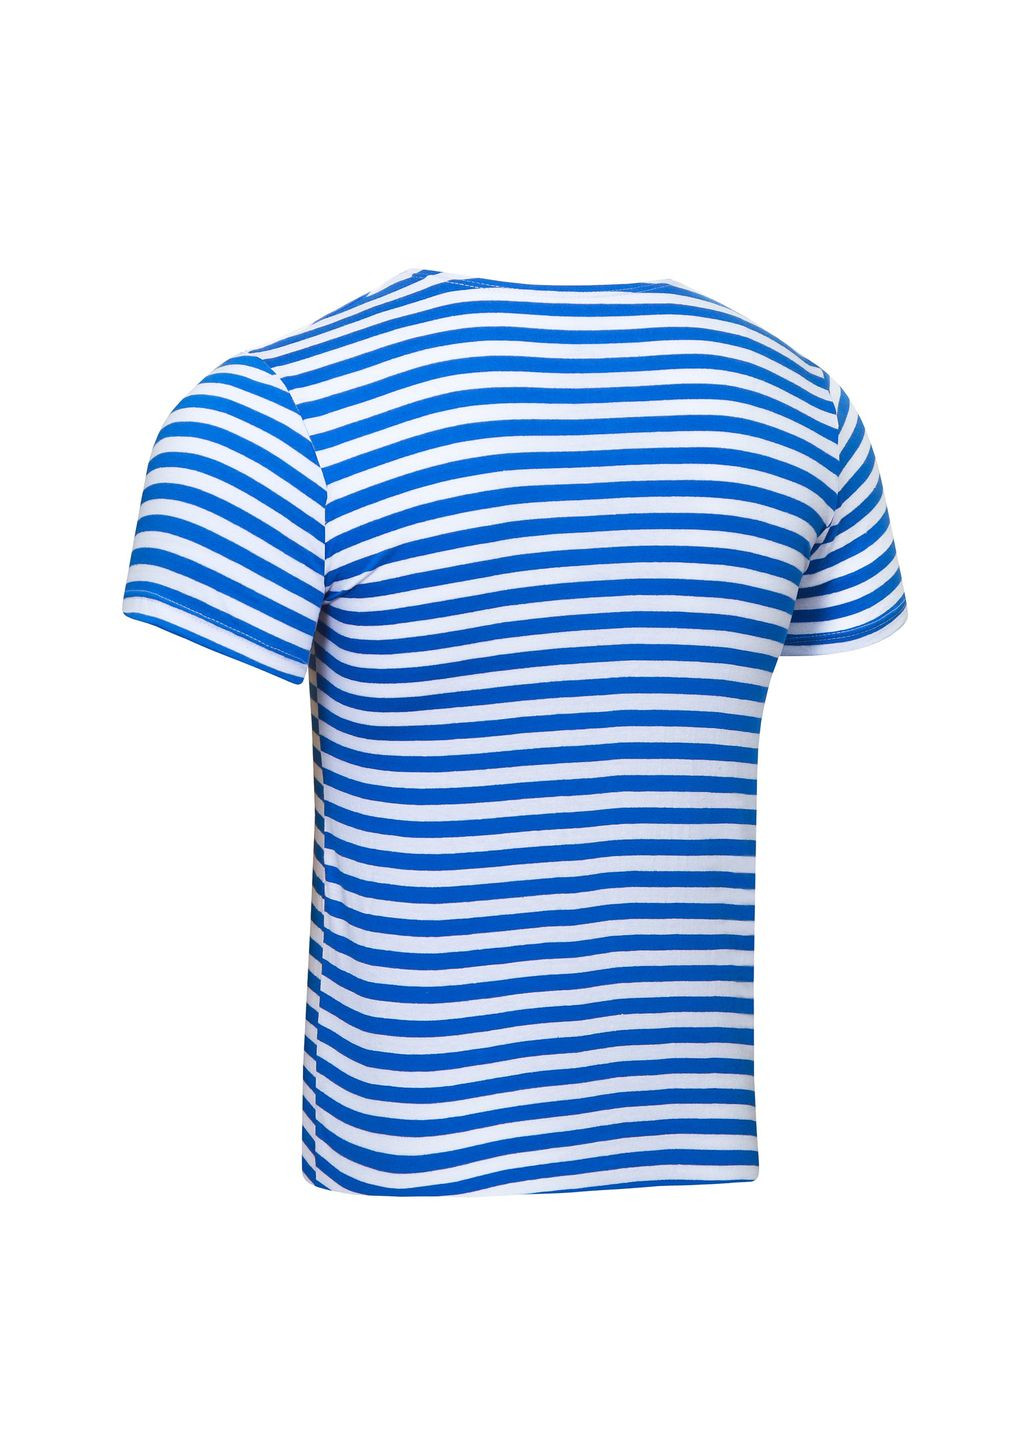 Голубая тельняшка-футболка вязаная вдв (голубая полоса, вдв, десантная) с коротким рукавом УТОГ